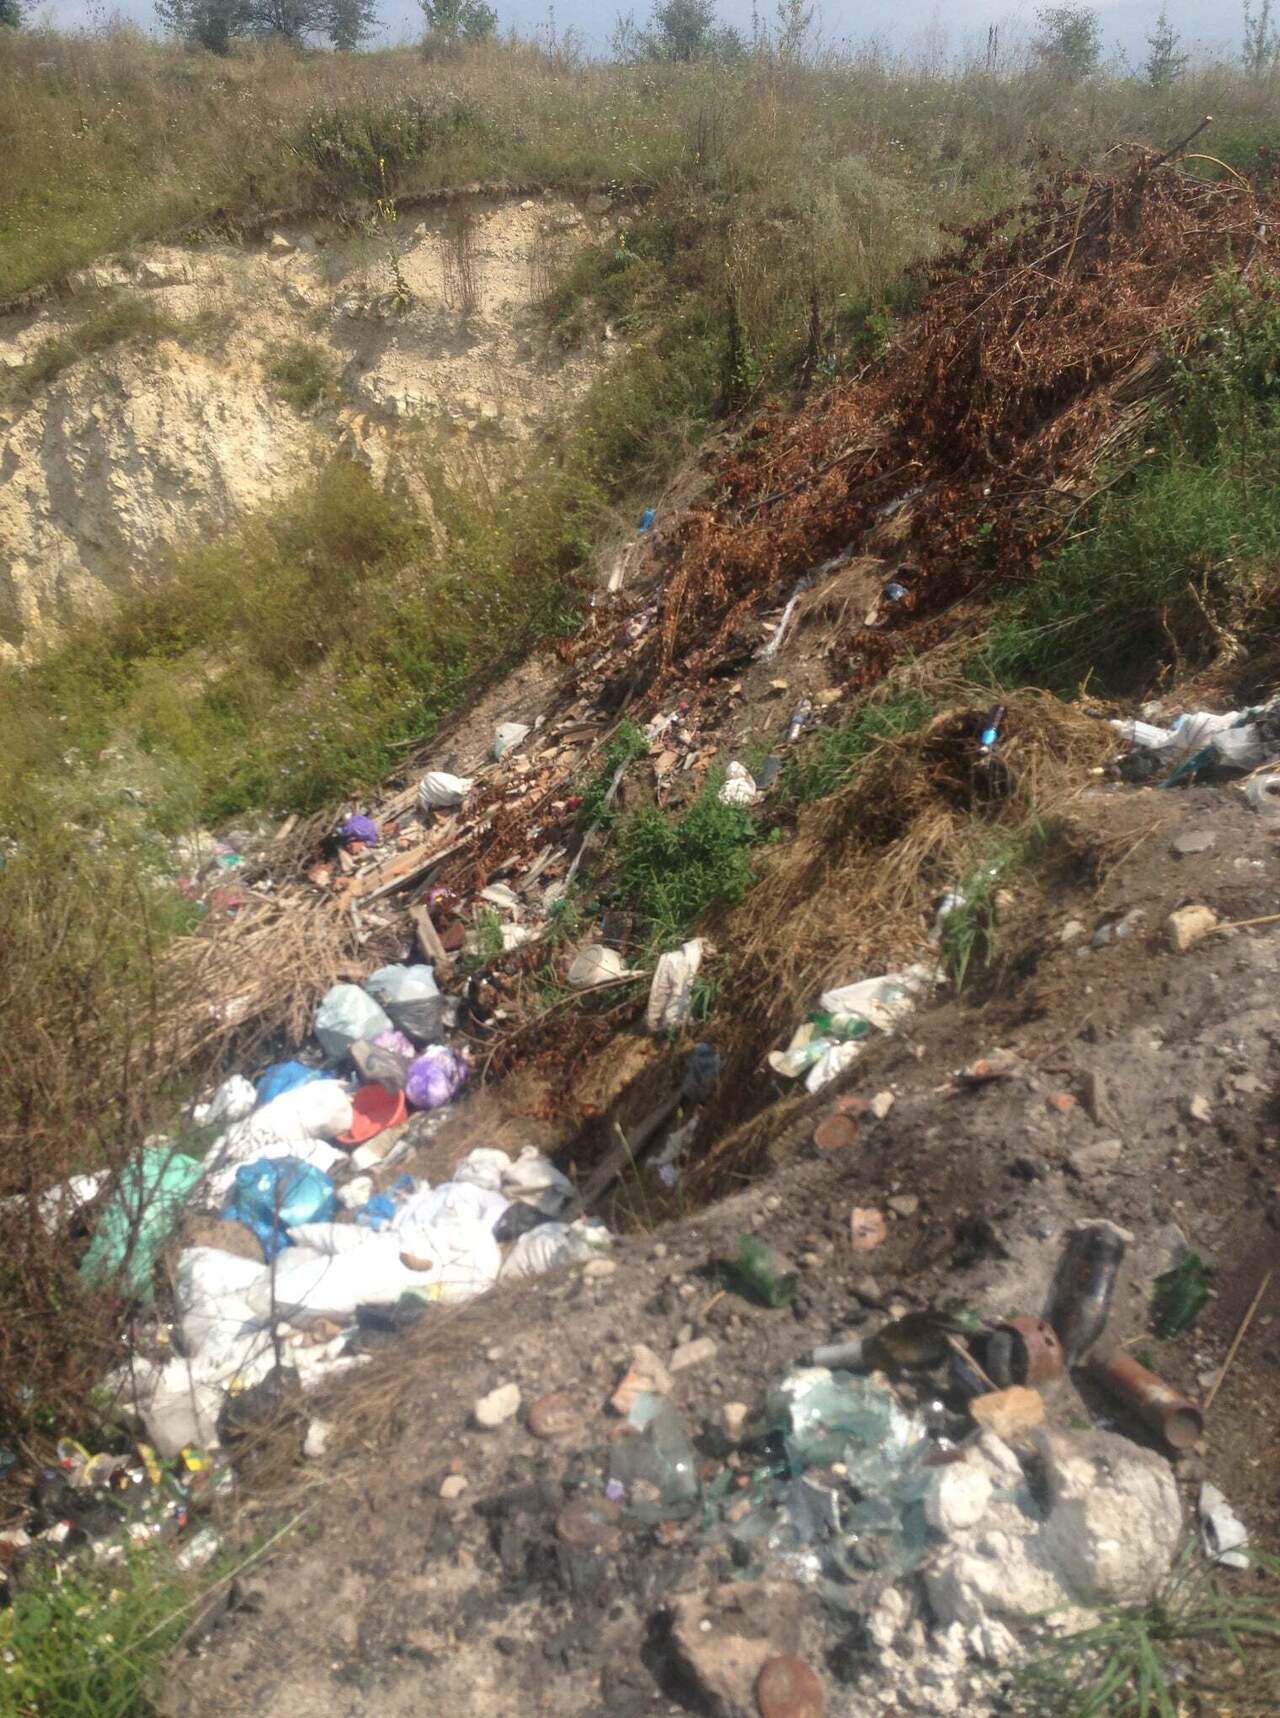 Pasted into Більше 20 стихійних сміттєзвалищ виявили у громадах Тернопільщини